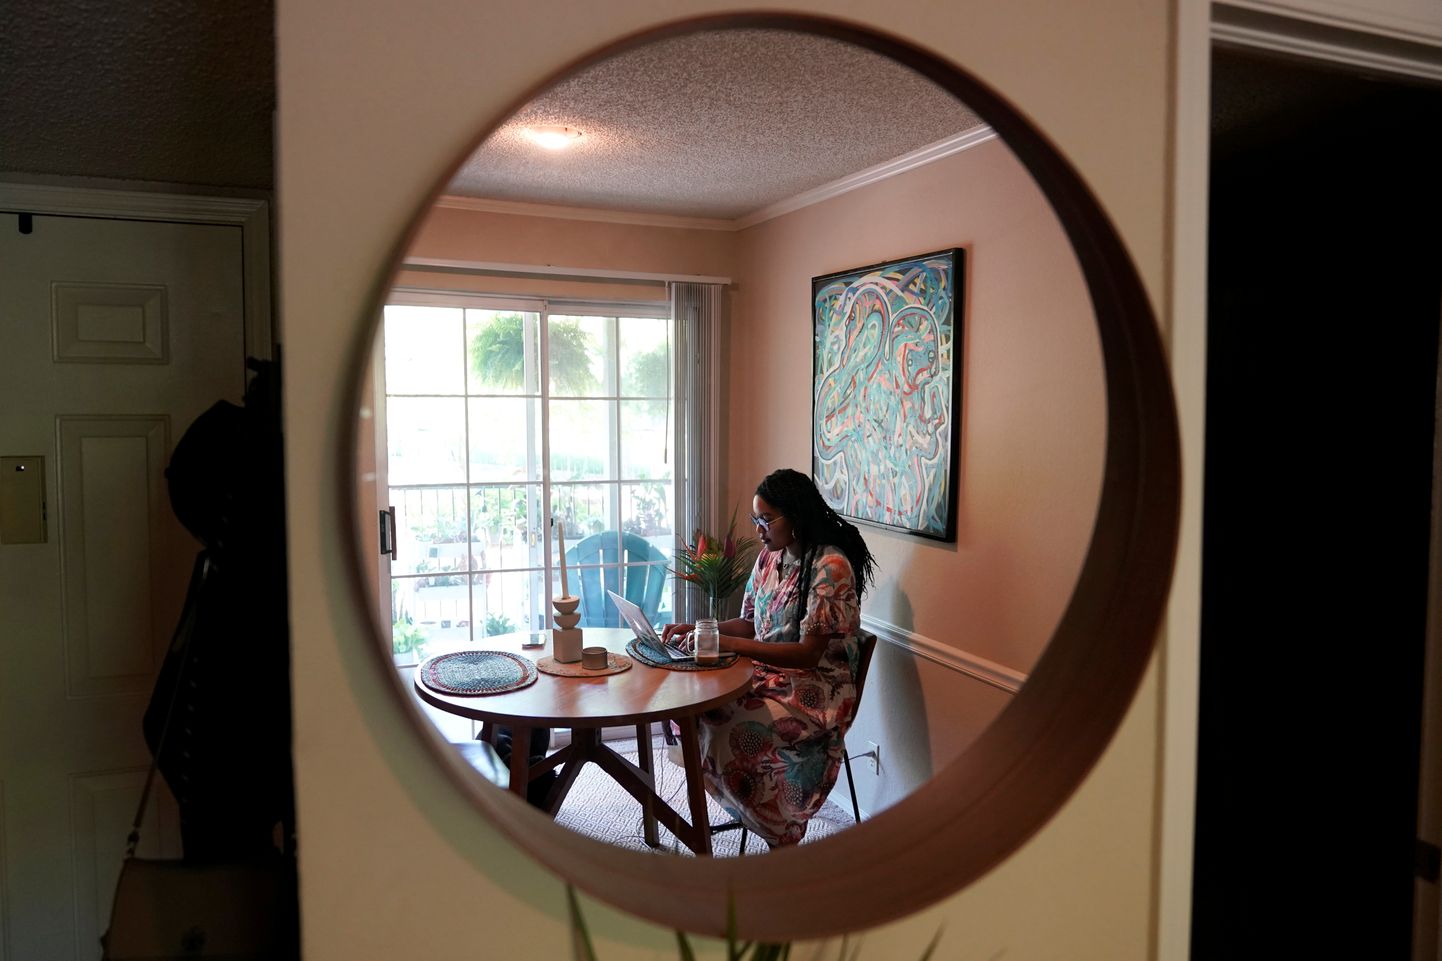 Oma Tulsa, Oklahoma kodus tööd tegeva turundusjuhi Jaleesa Garlandi kujutis esiku kõrval rippuvas peeglis.